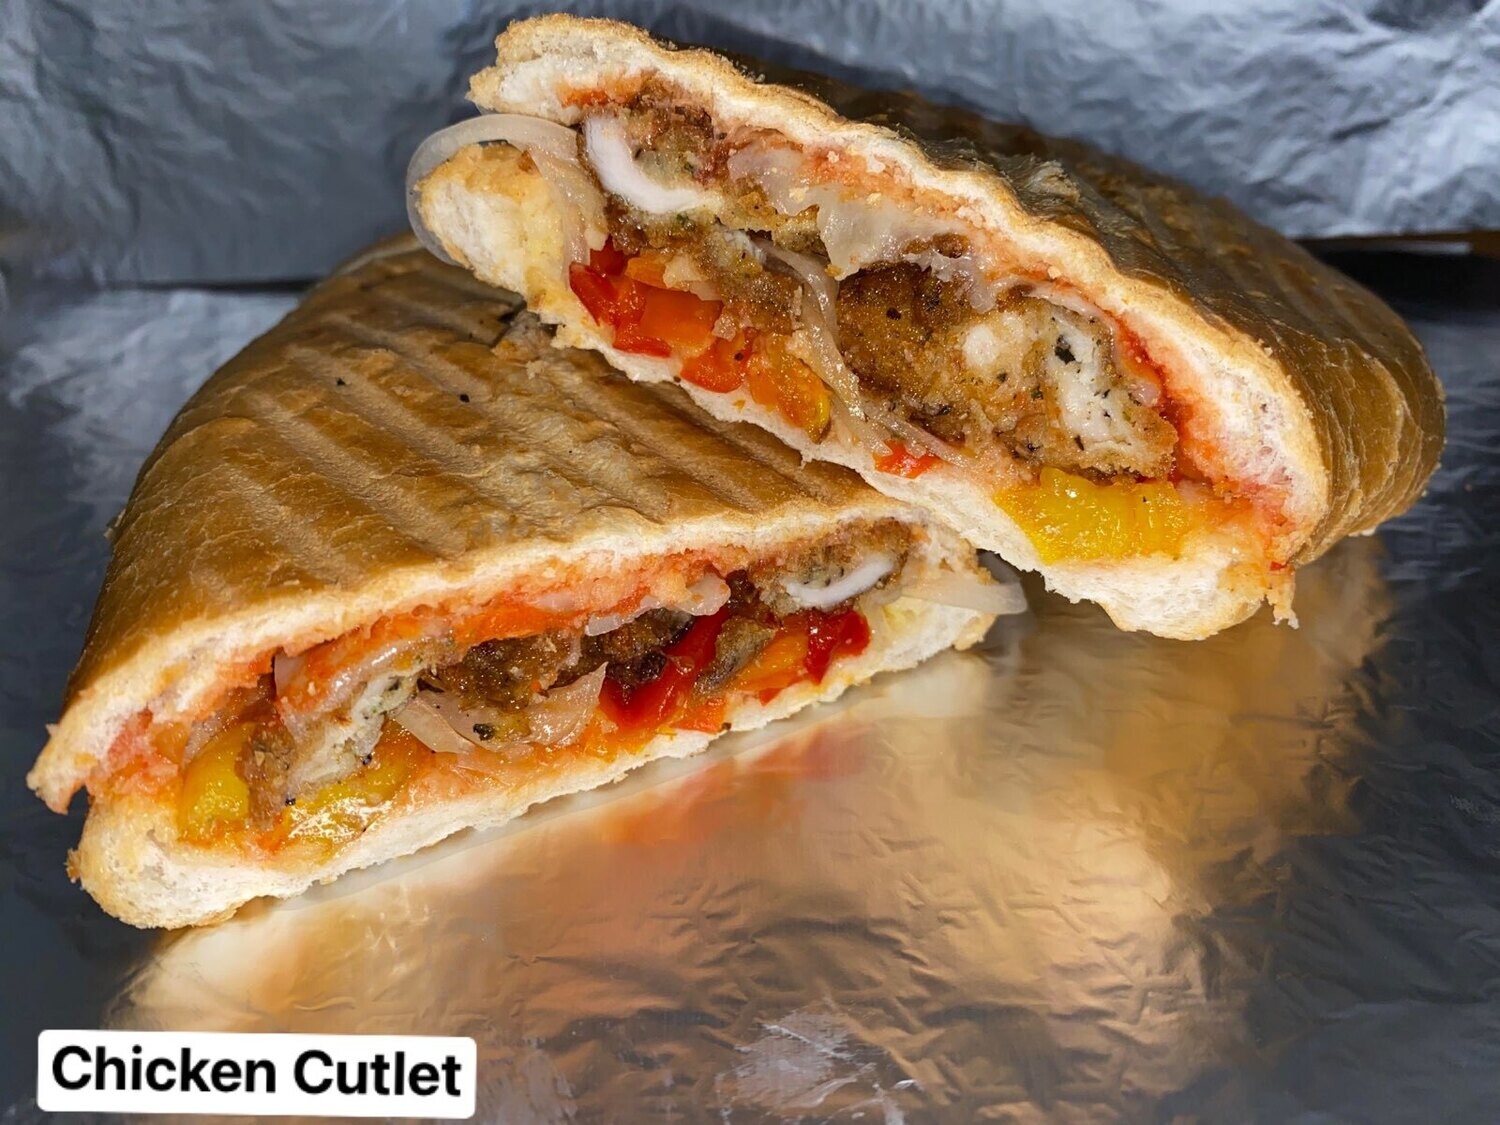 Chicken Cutlet sandwich